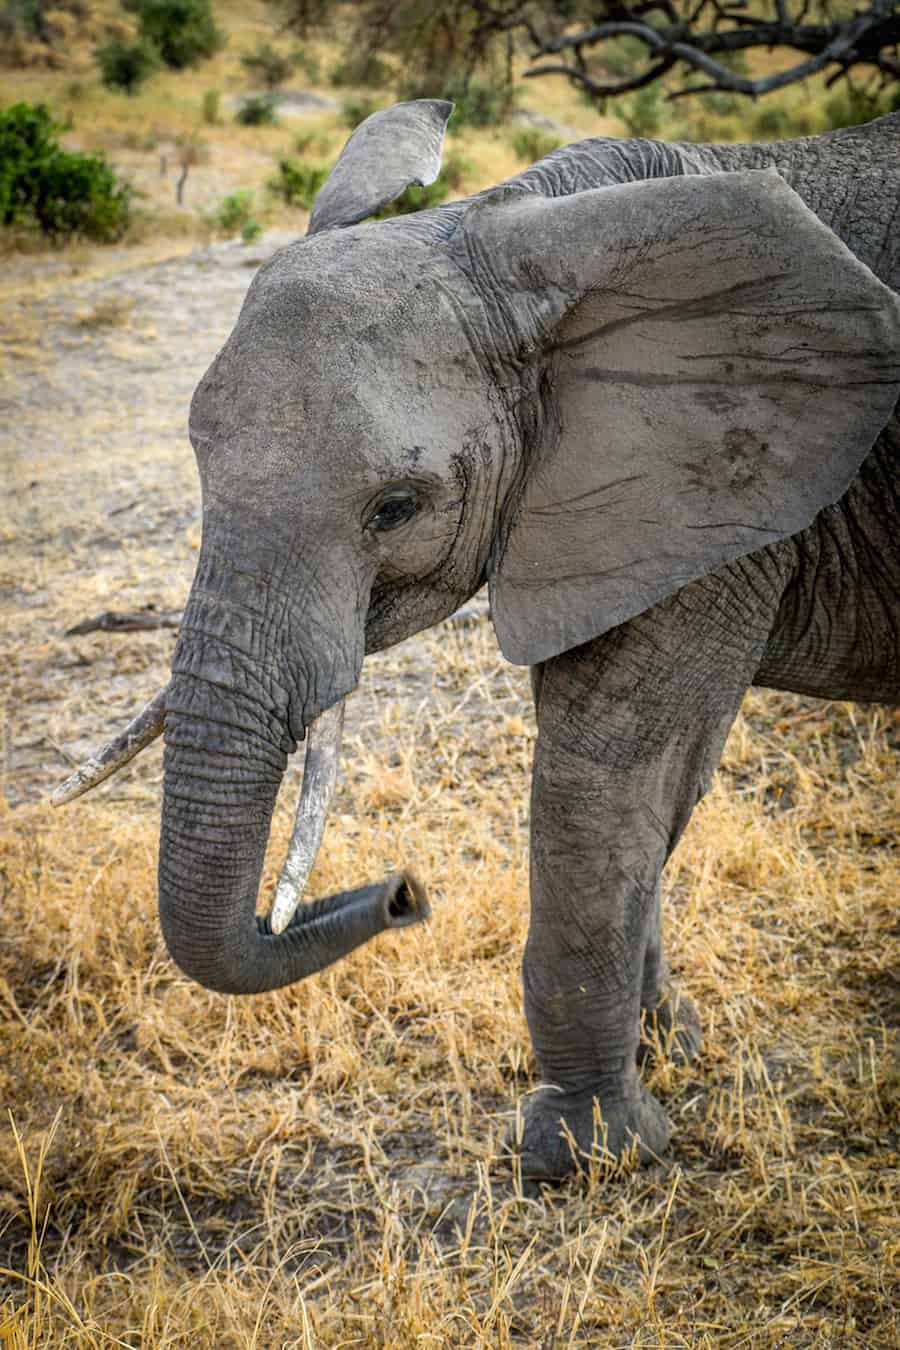 Adolescent Elephant in Tarangire National Park, Tanzania